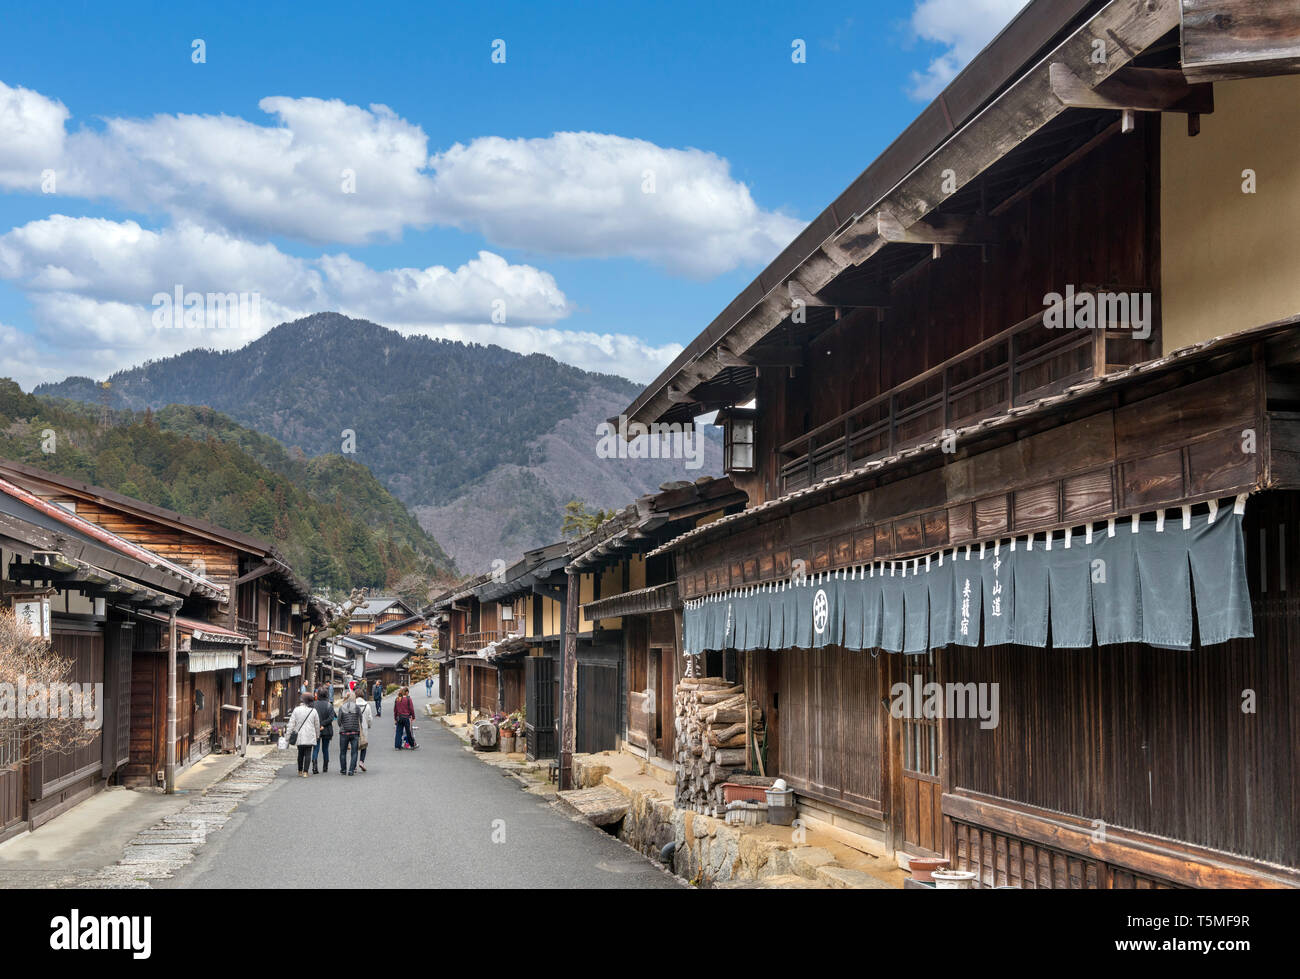 Rue principale de la vieille ville de l'ère Edo, Nagasendo de Tsumago, la vallée de Kiso, Nagano Prefecture, Japan. La commune fait partie de la randonnée. Magamo-Tsumago Banque D'Images